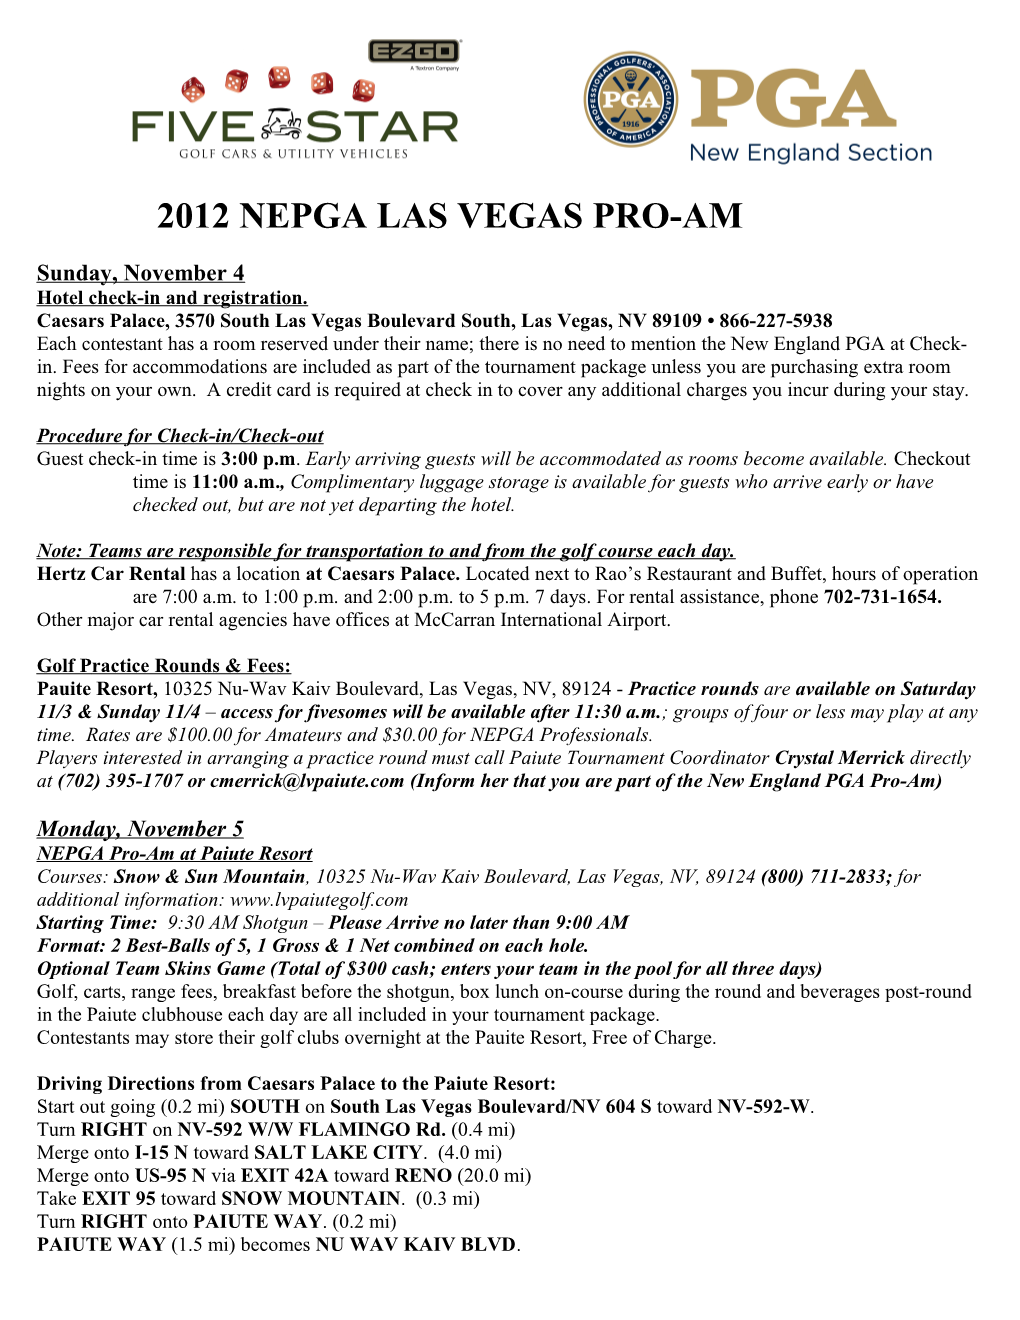 NEPGA Tournament Invoice